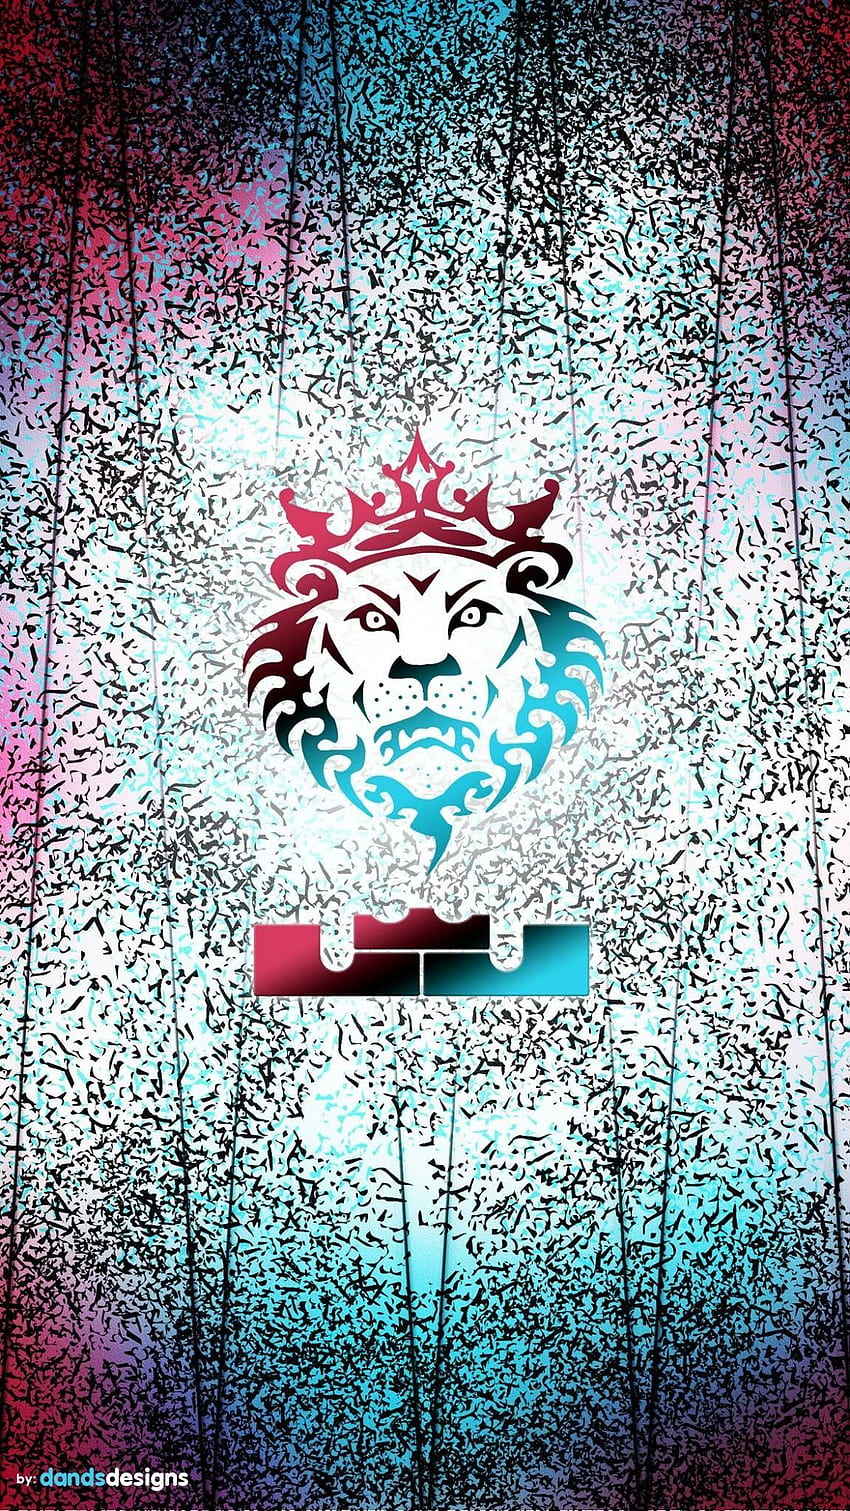 lebron james logo wallpaper hd